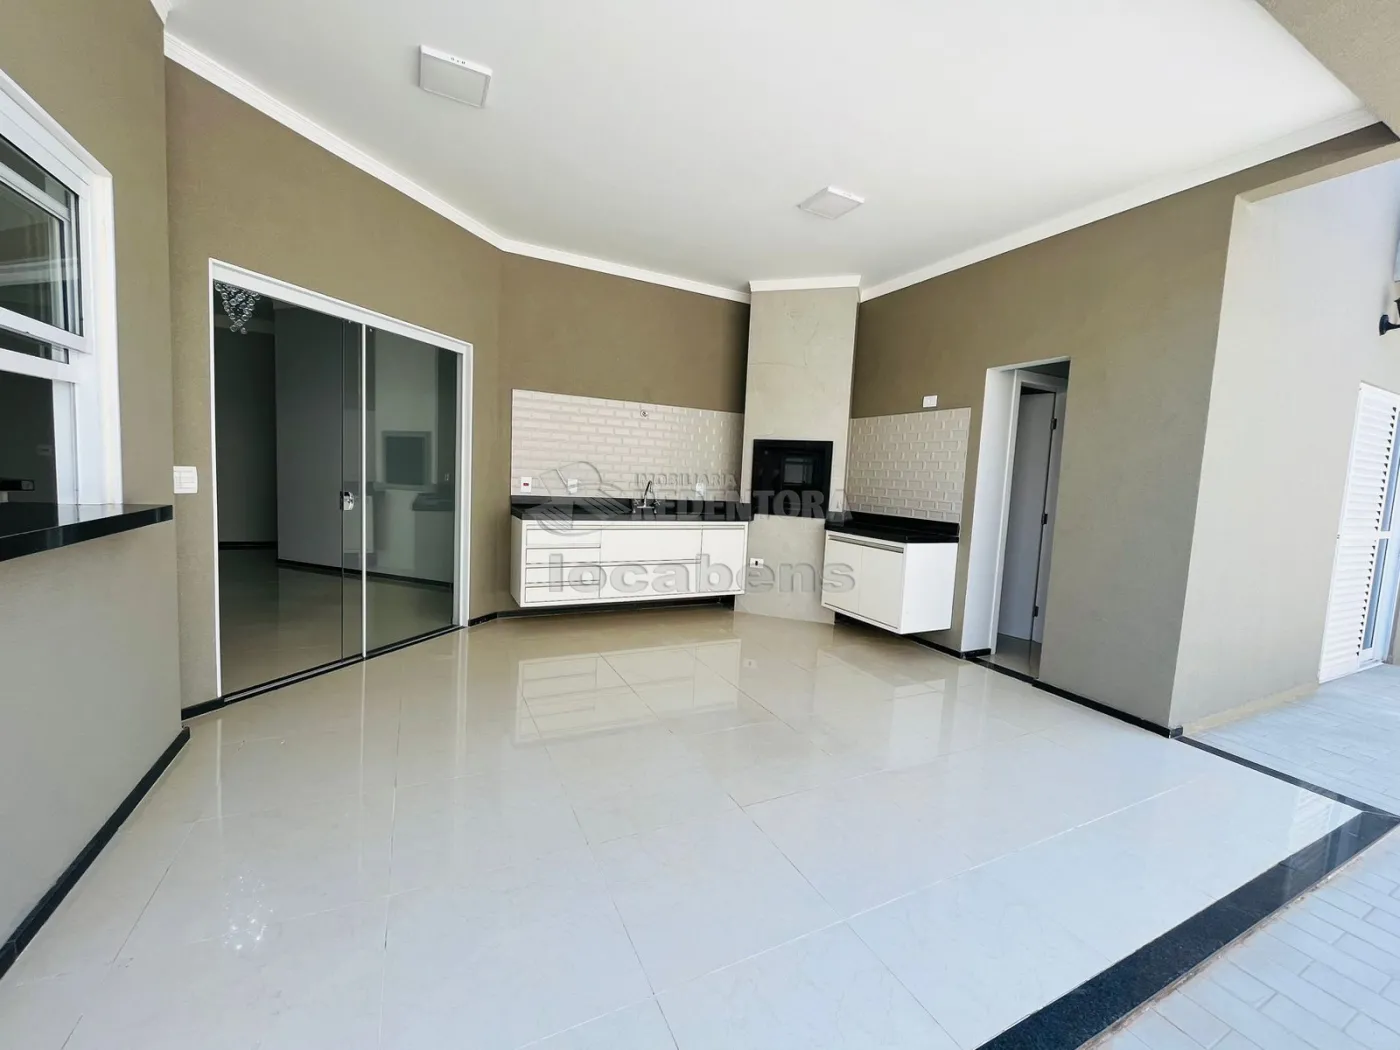 Comprar Casa / Condomínio em Mirassol apenas R$ 860.000,00 - Foto 6